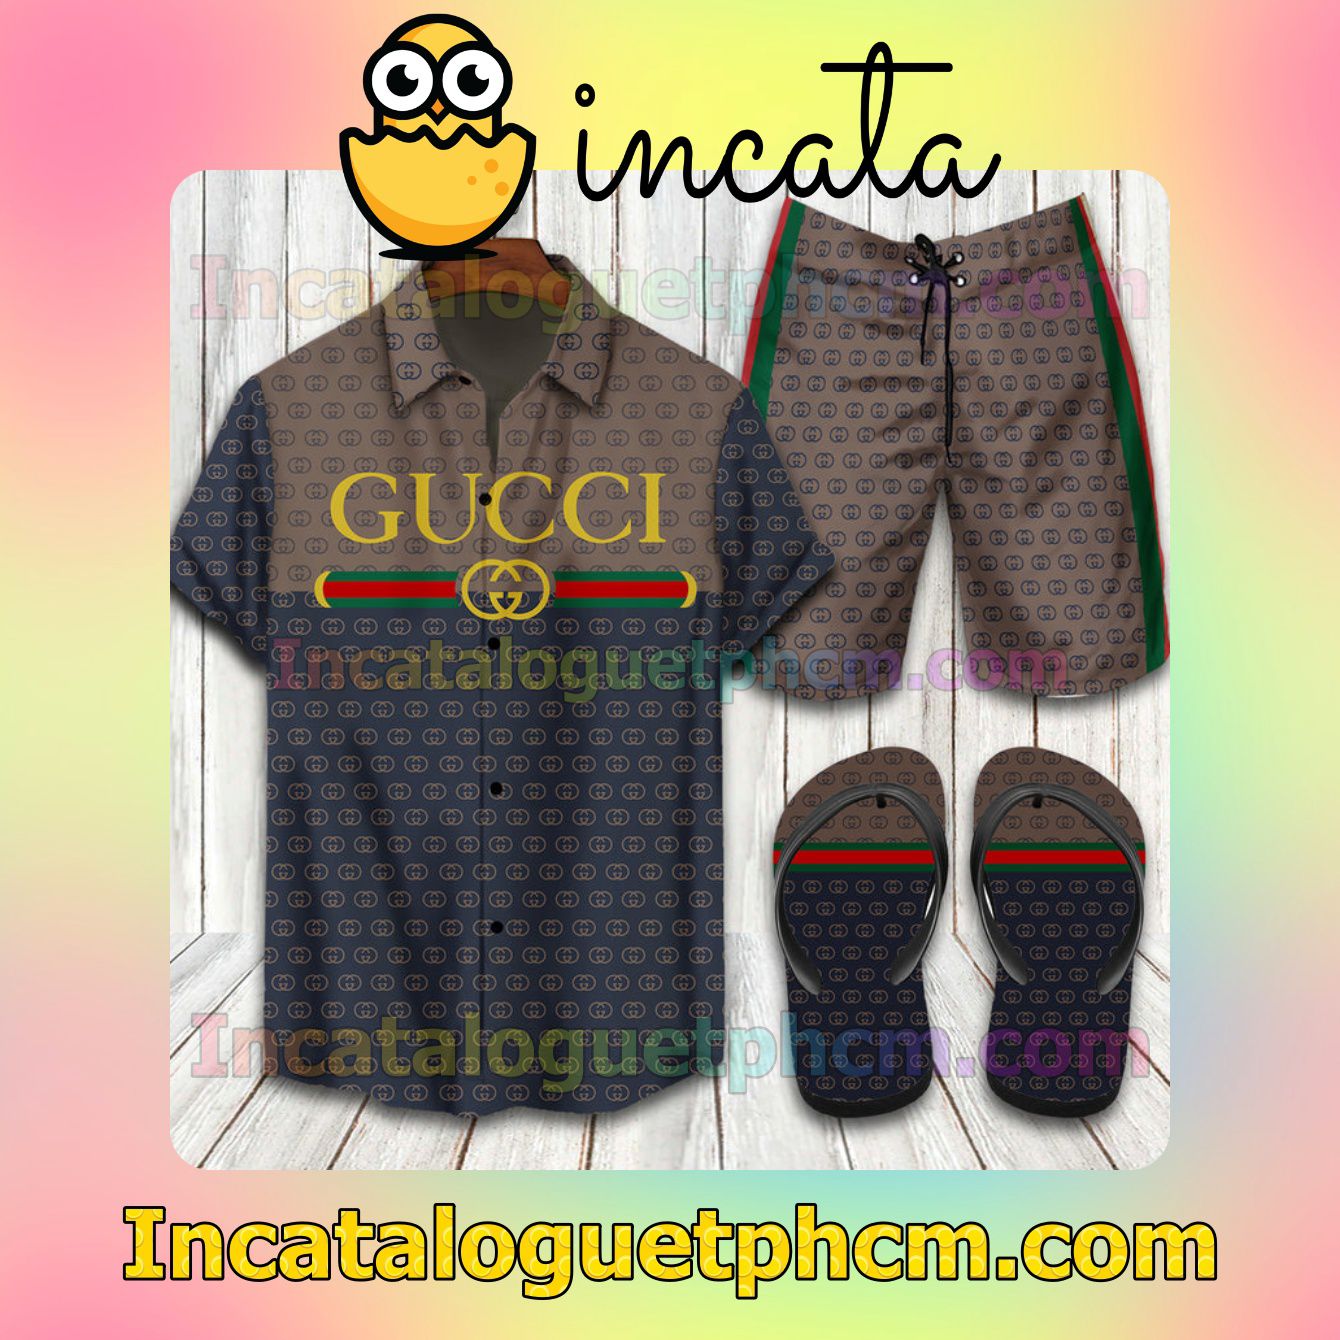 Top Gucci 2022 Brown And Black Aloha Shirt And Shorts